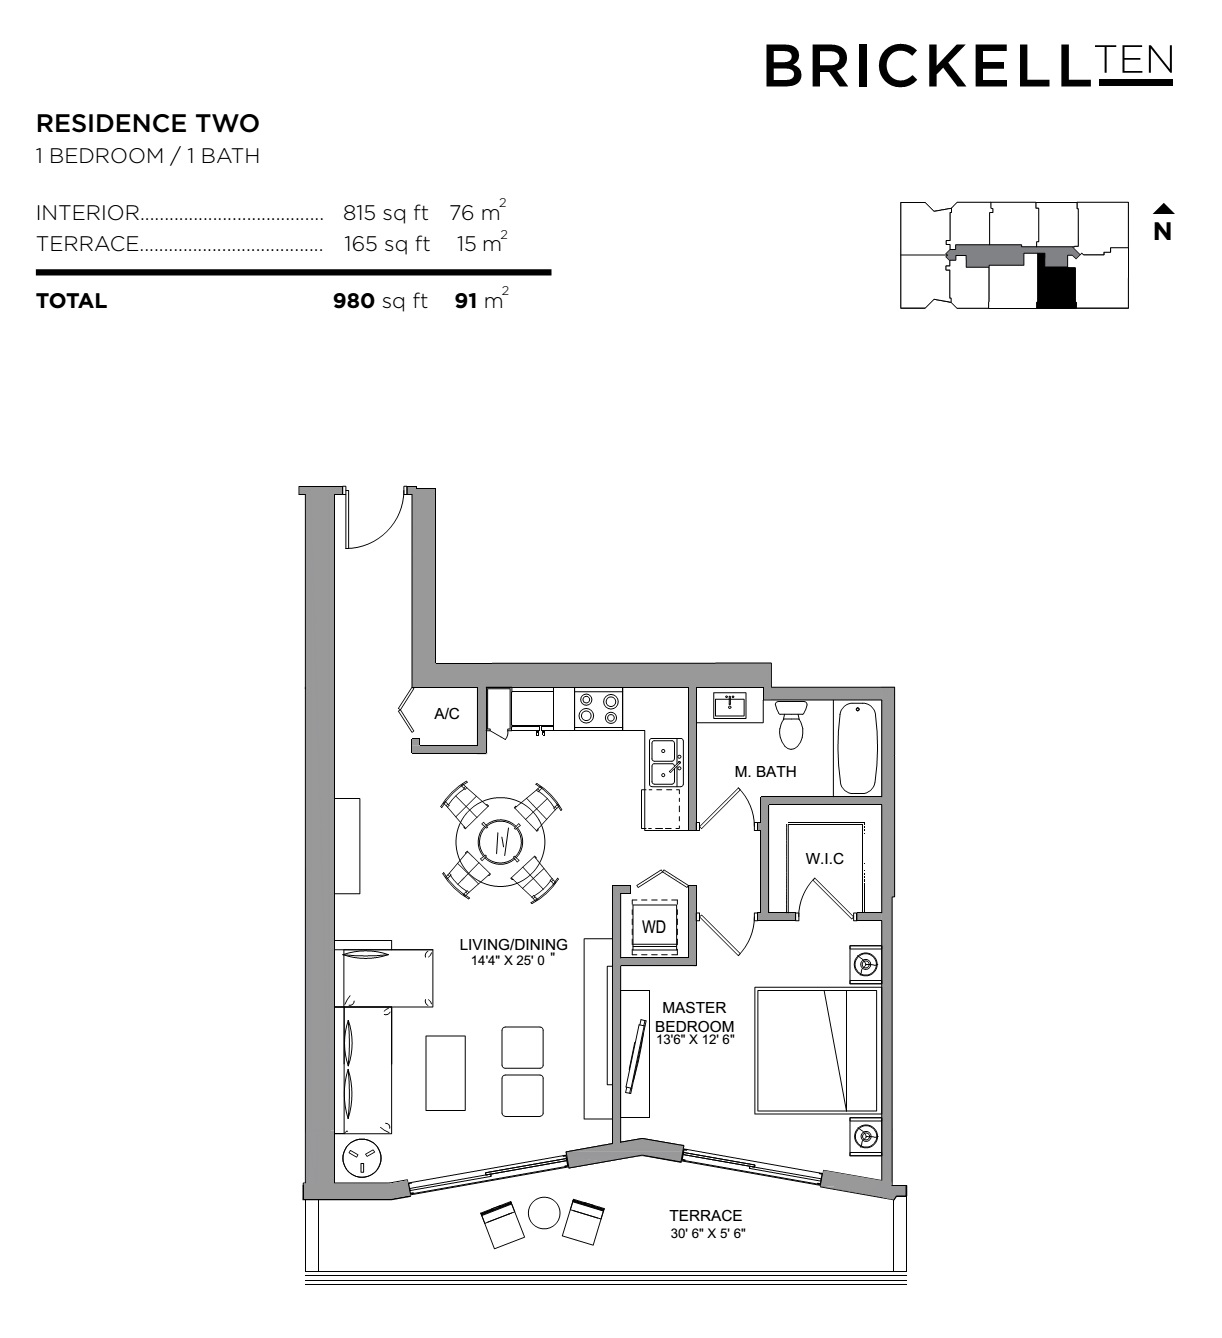 Brickell Ten Residence 02